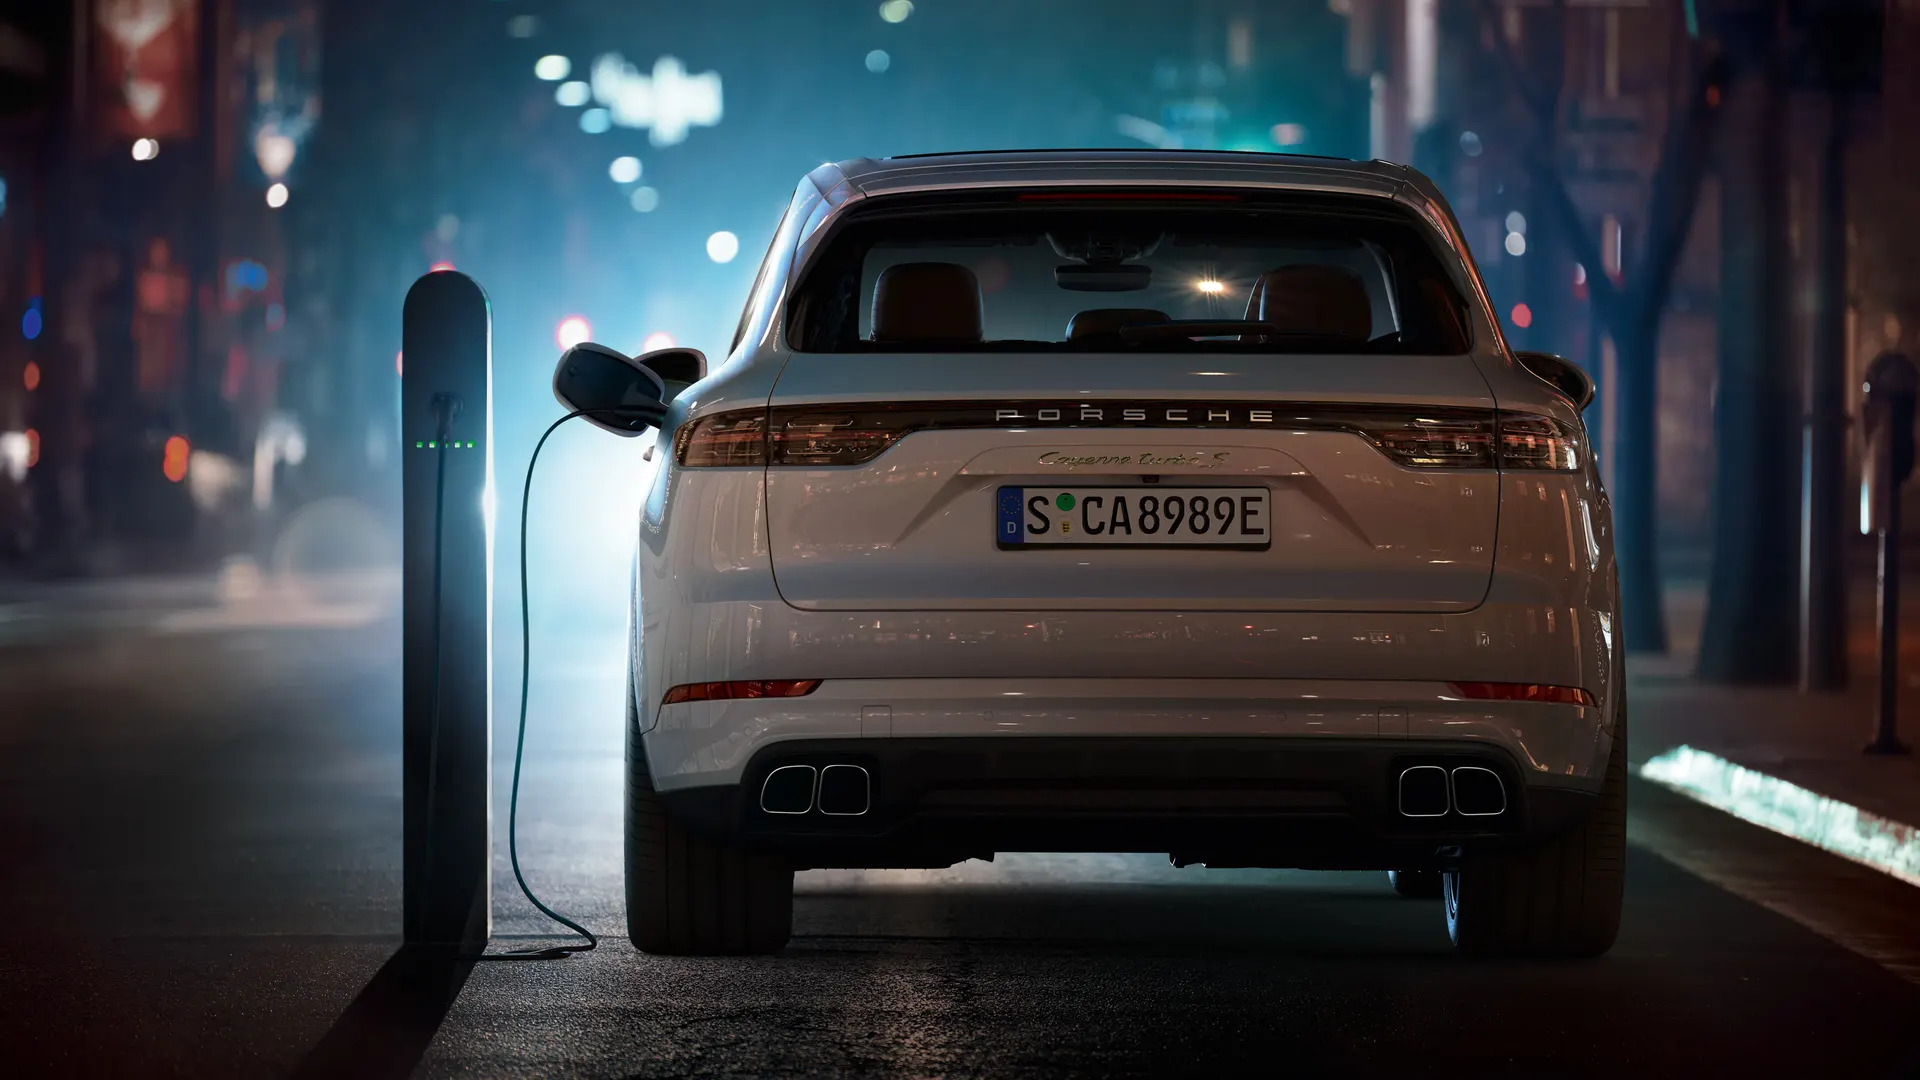 風行T5 EVO車尾乍看之下與Porsche旗下Cayenne相當類似。(圖片來源/ Porsche)